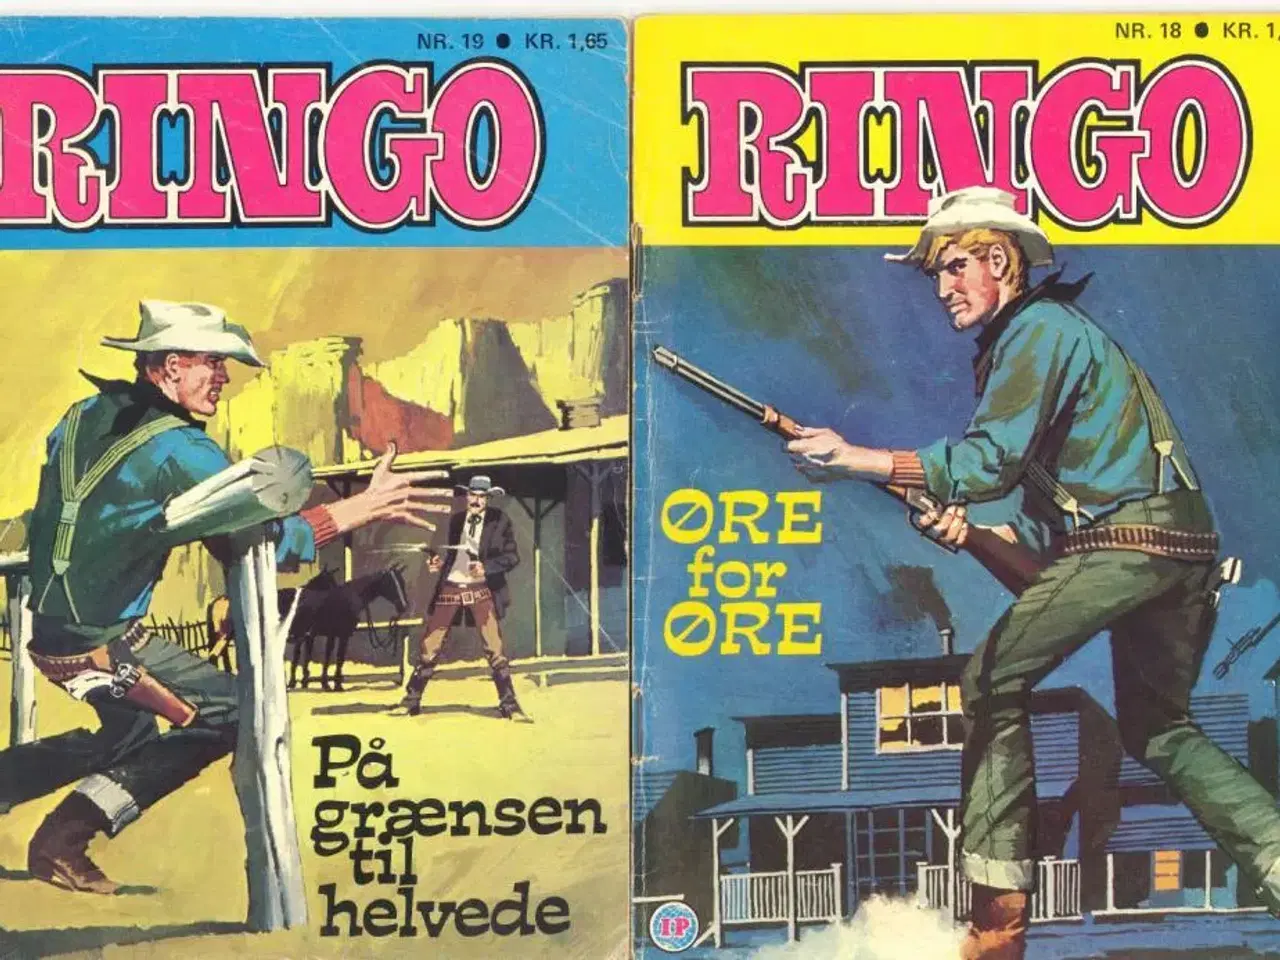 Billede 14 - Cowboy, Texas og Ringo. Tegneserier, blade..